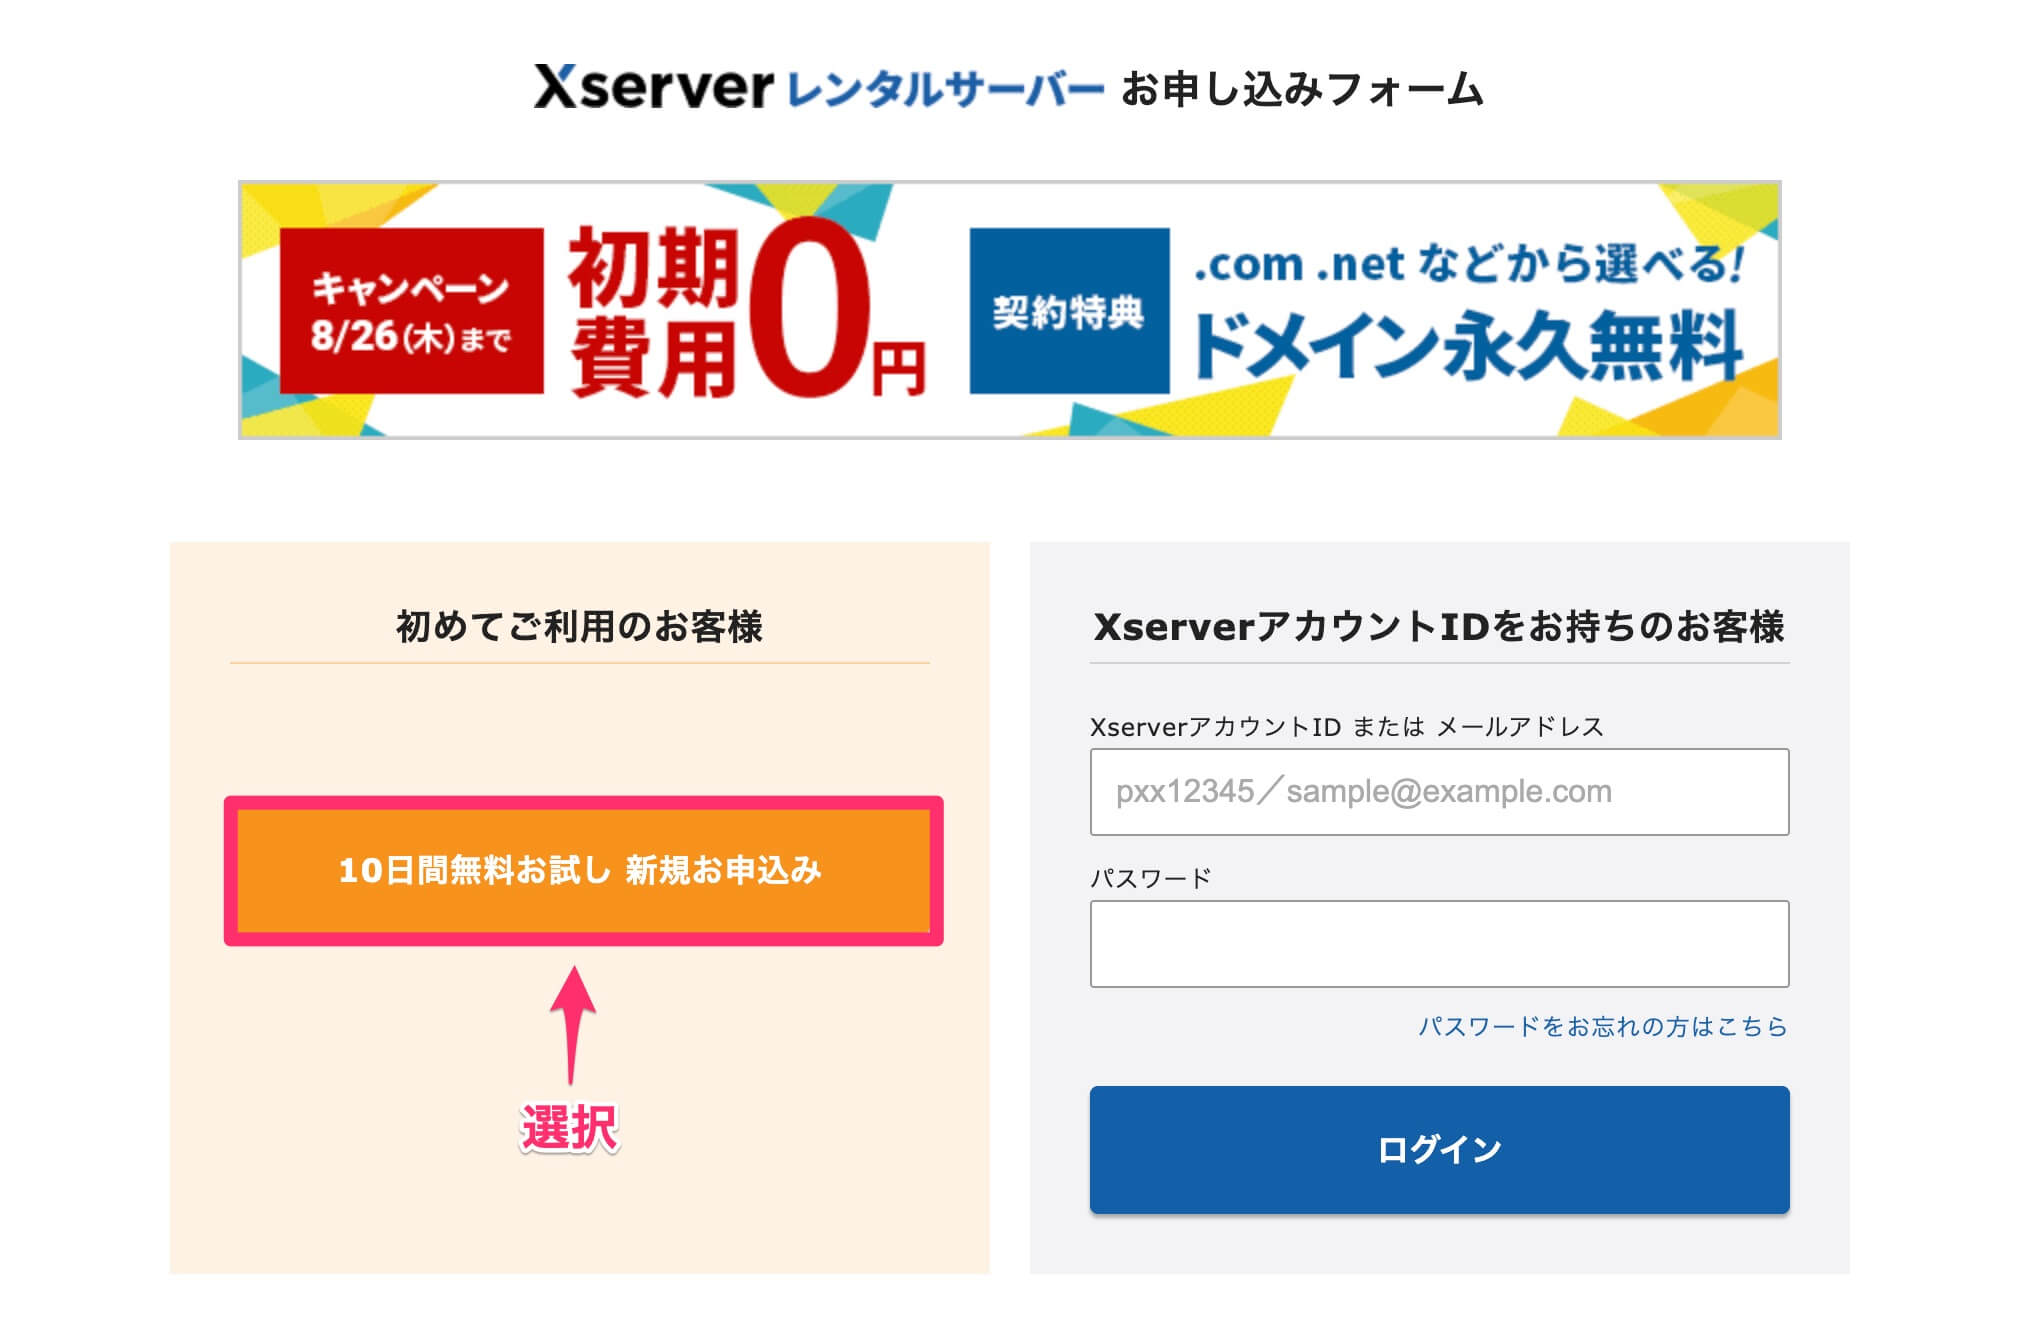 Xserver申込画面トップ